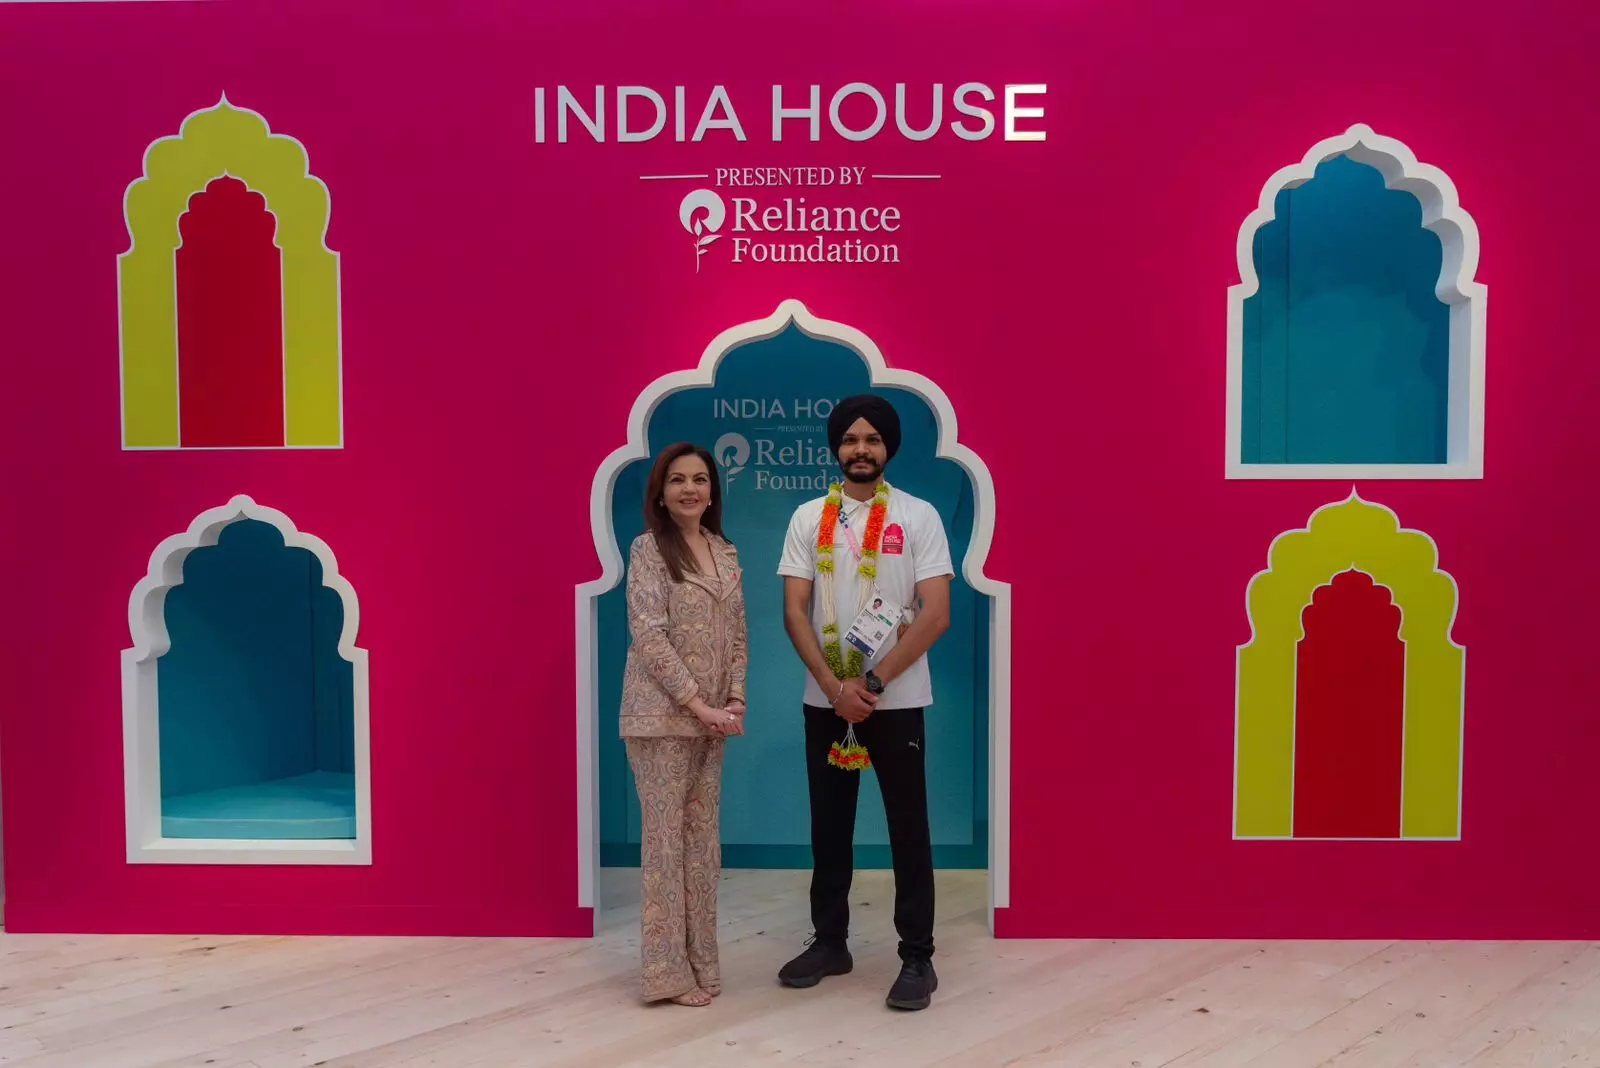 इंडिया-हाउस में लगा भारतीय एथलीटों का जमावड़ा, नीता अंबानी ने किया सम्मानित